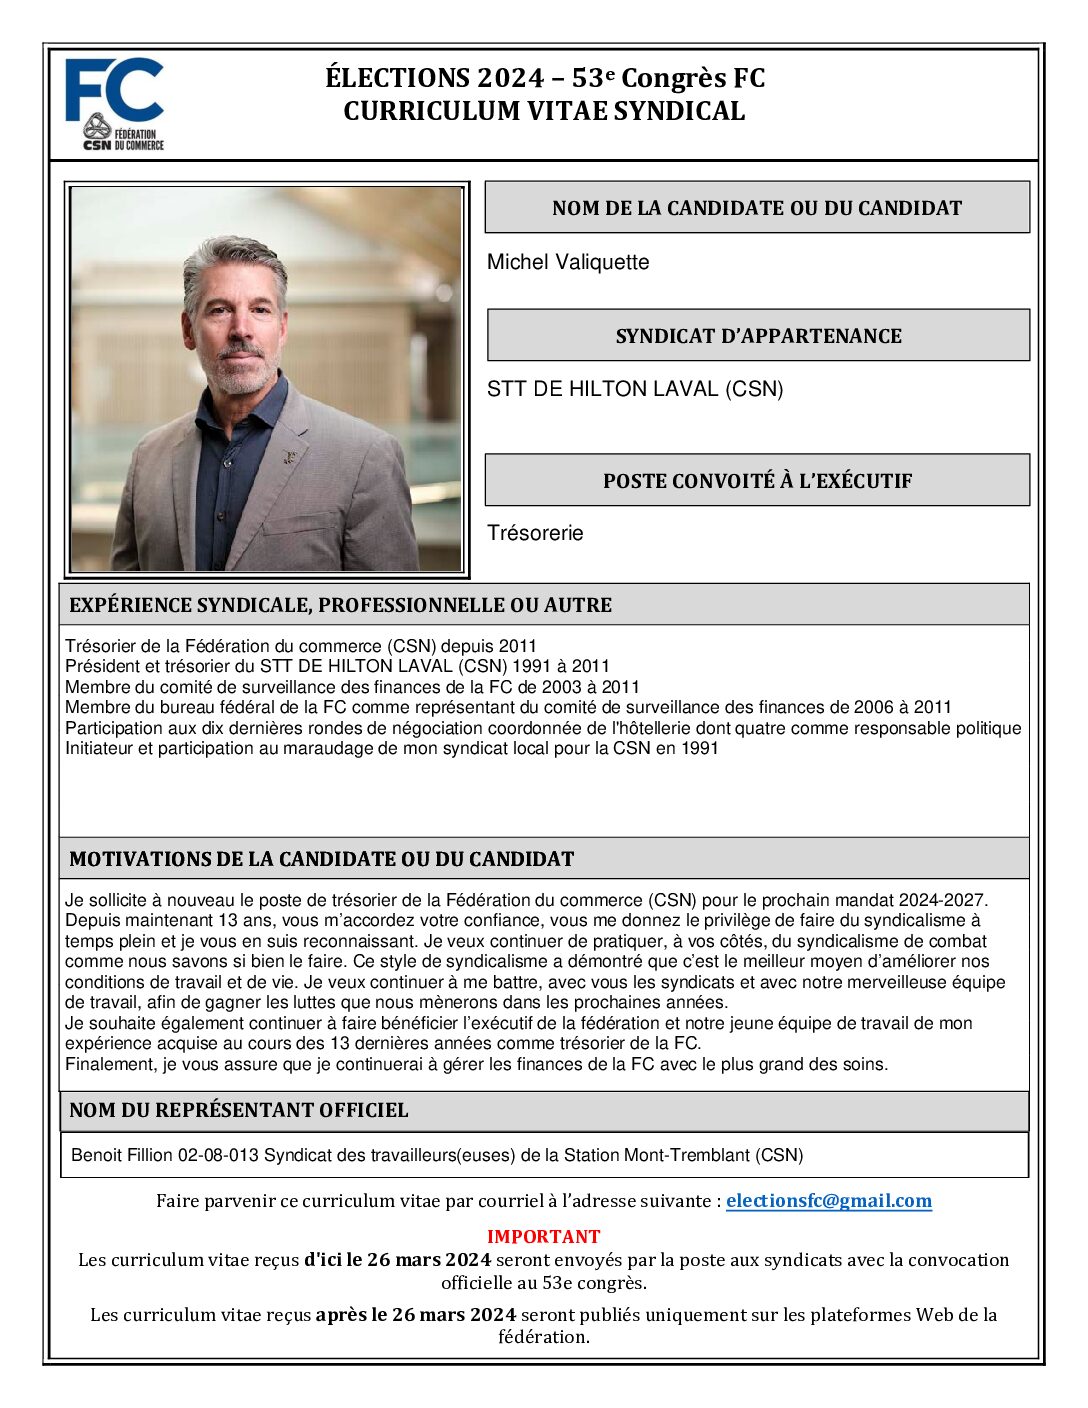 Michel Valiquette Curriculum Vitae